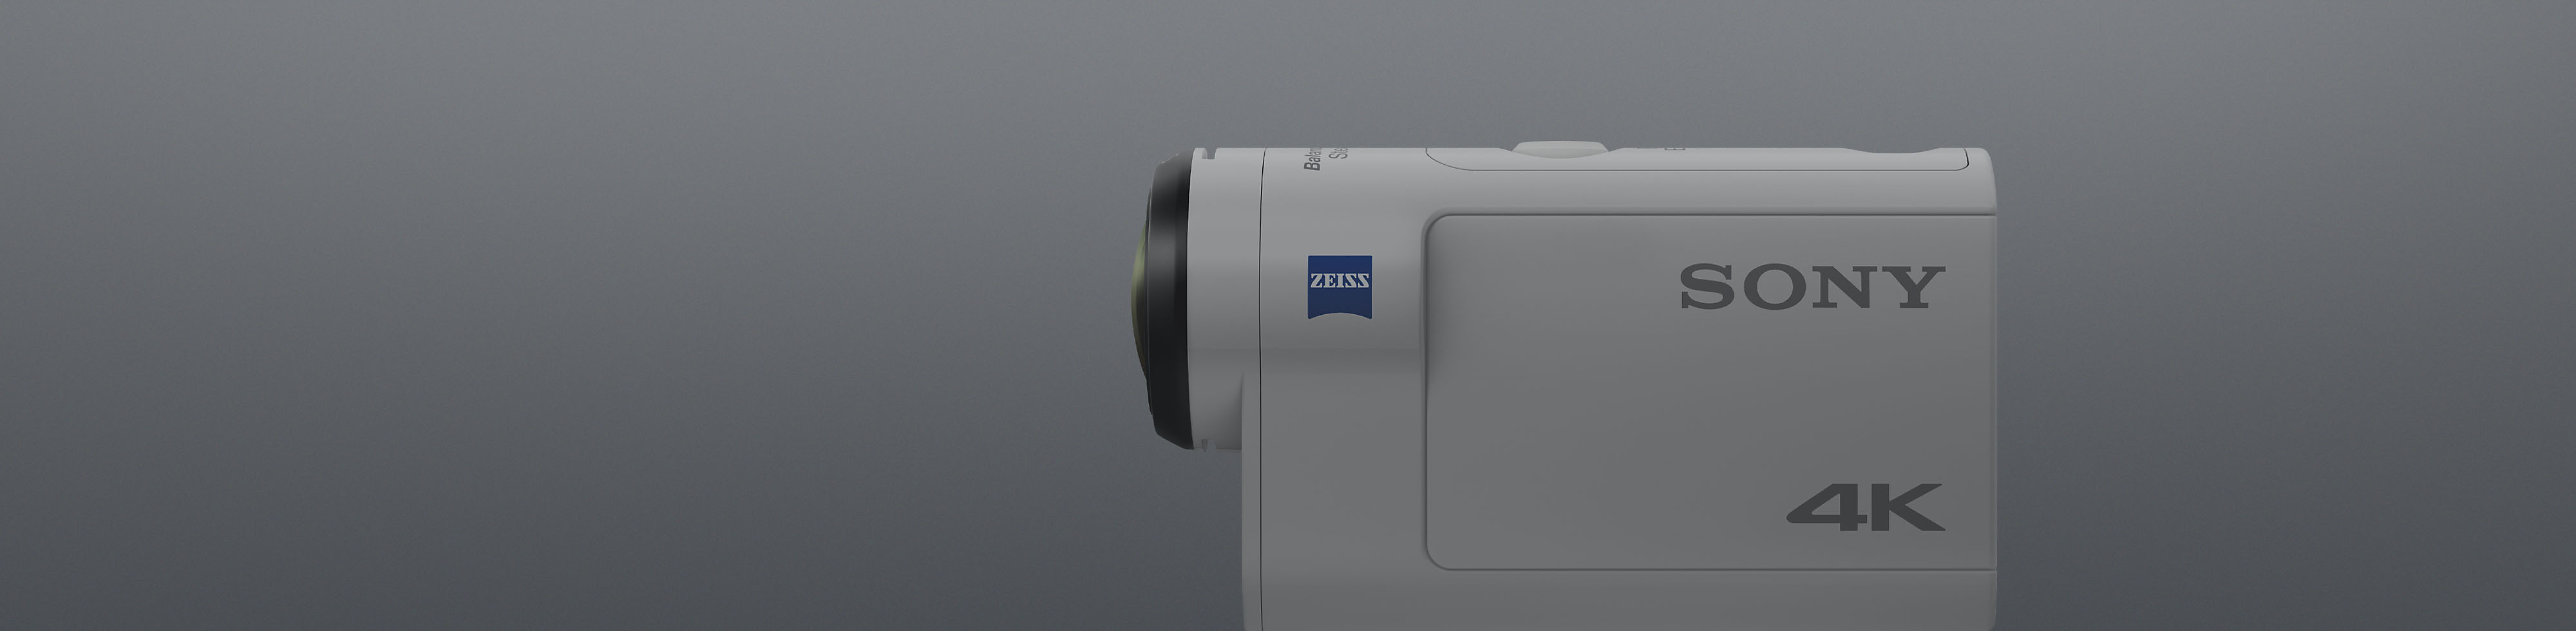 منظر جانبي لكاميرا 4K Action Cam بيضاء من سوني